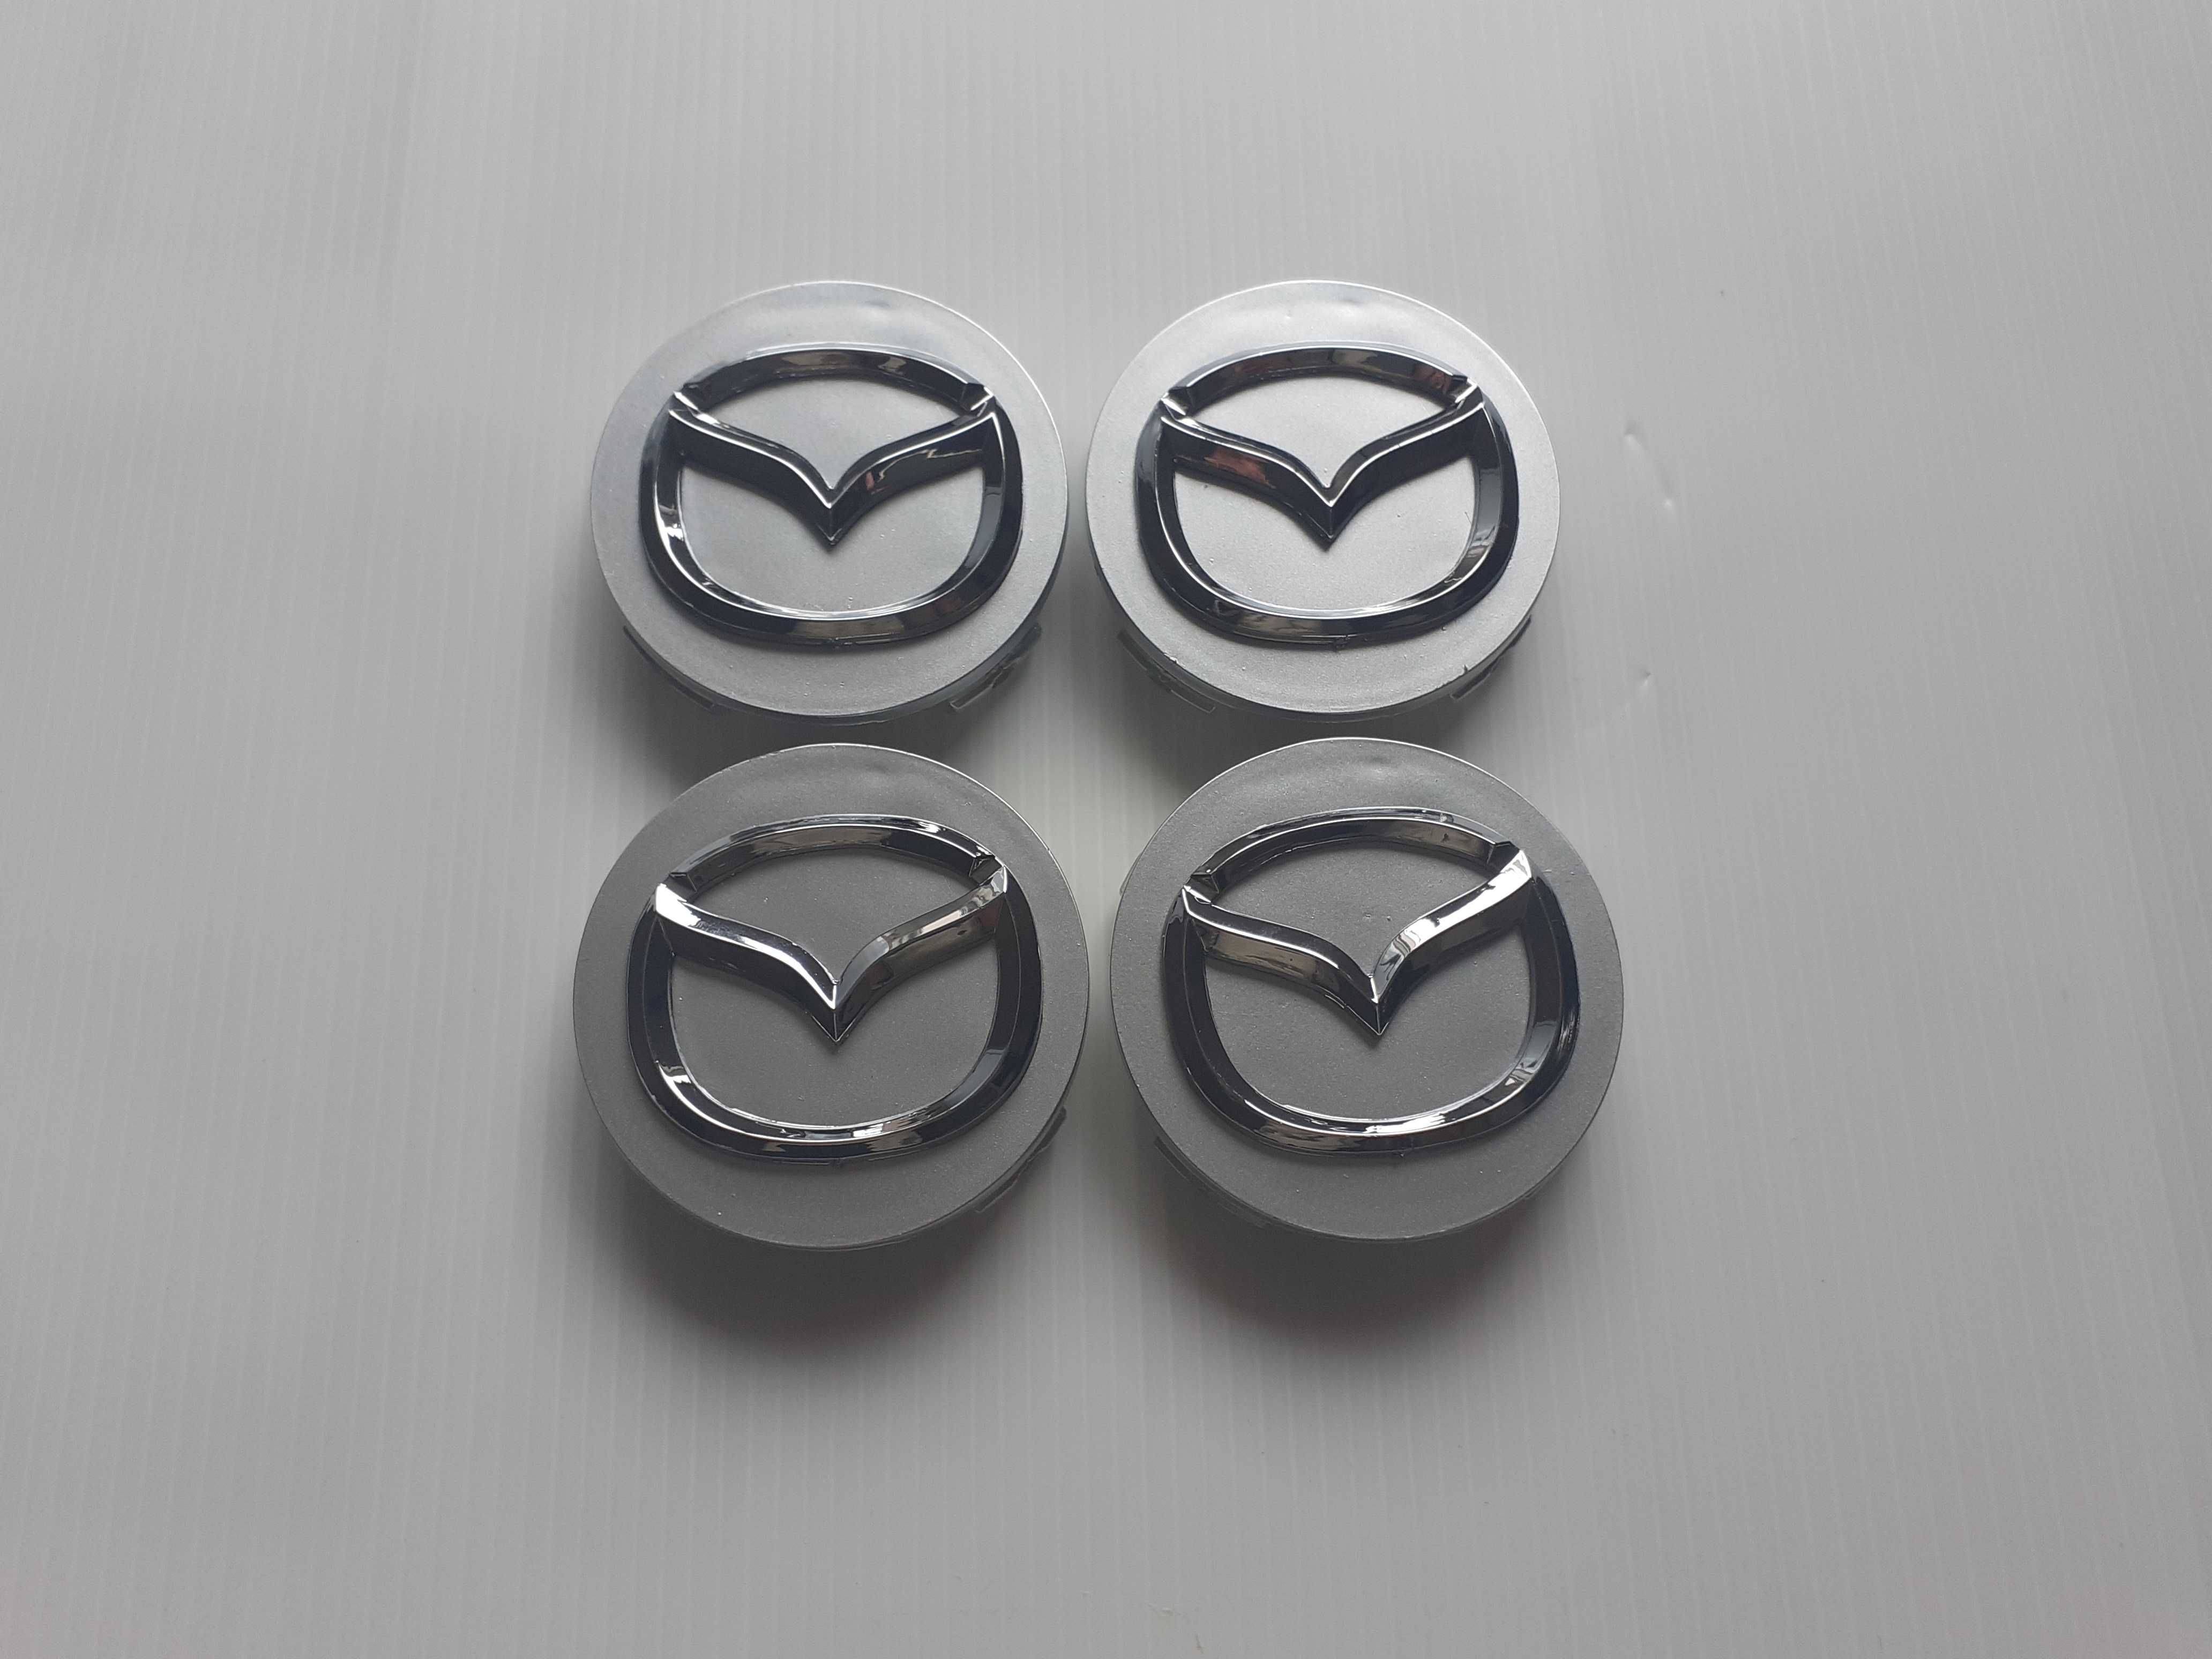 Centros/tampas de jante completos Mazda com 52, 56, 60, 65 e 68 mm